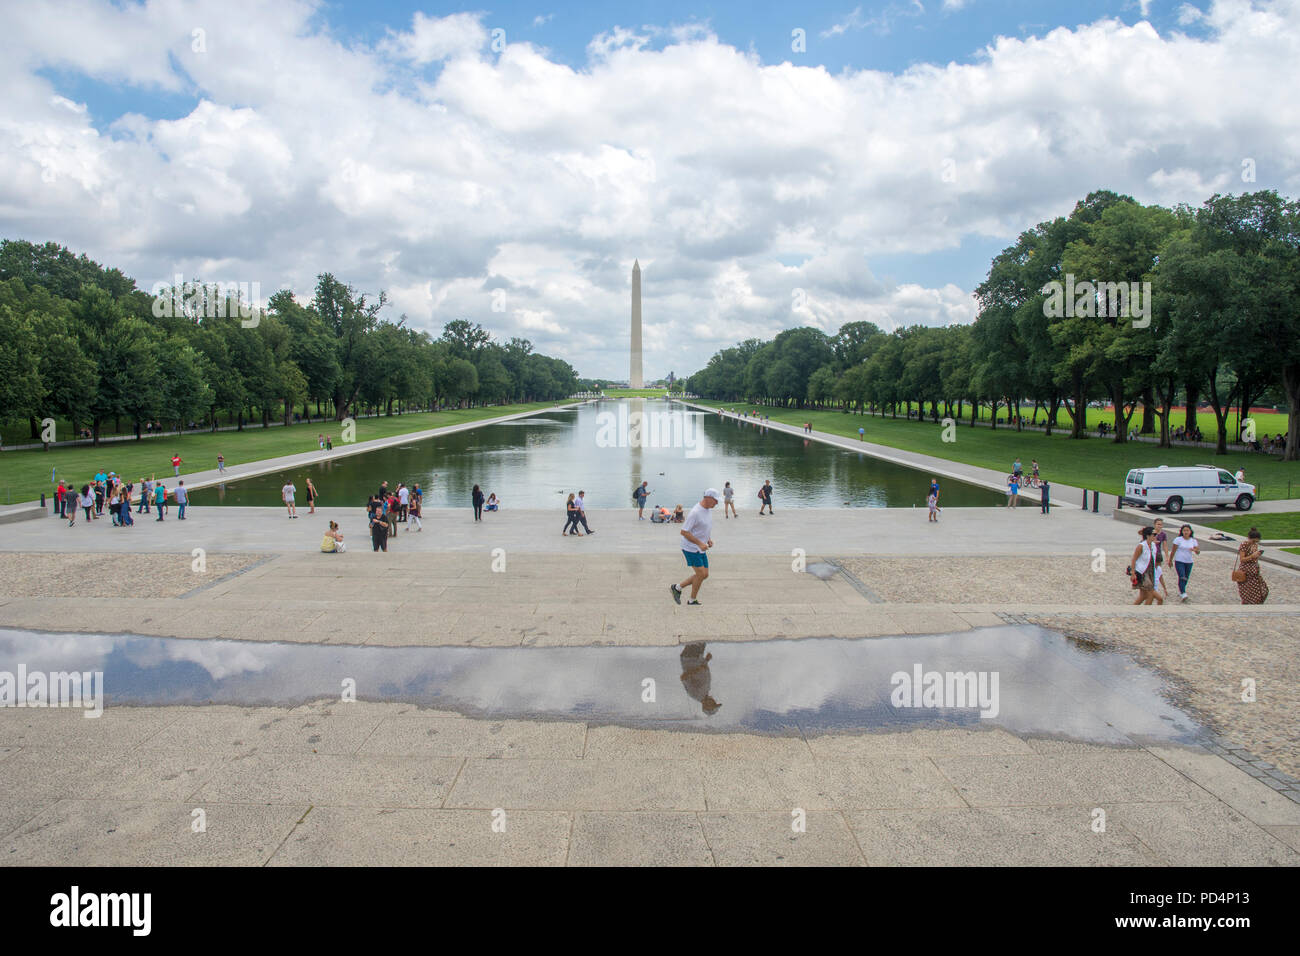 Un pareggiatore è specchiata in una pozza vicino alla piscina riflettente del Lincoln Memorial. Il Monumento a Washington è in background. Foto Stock